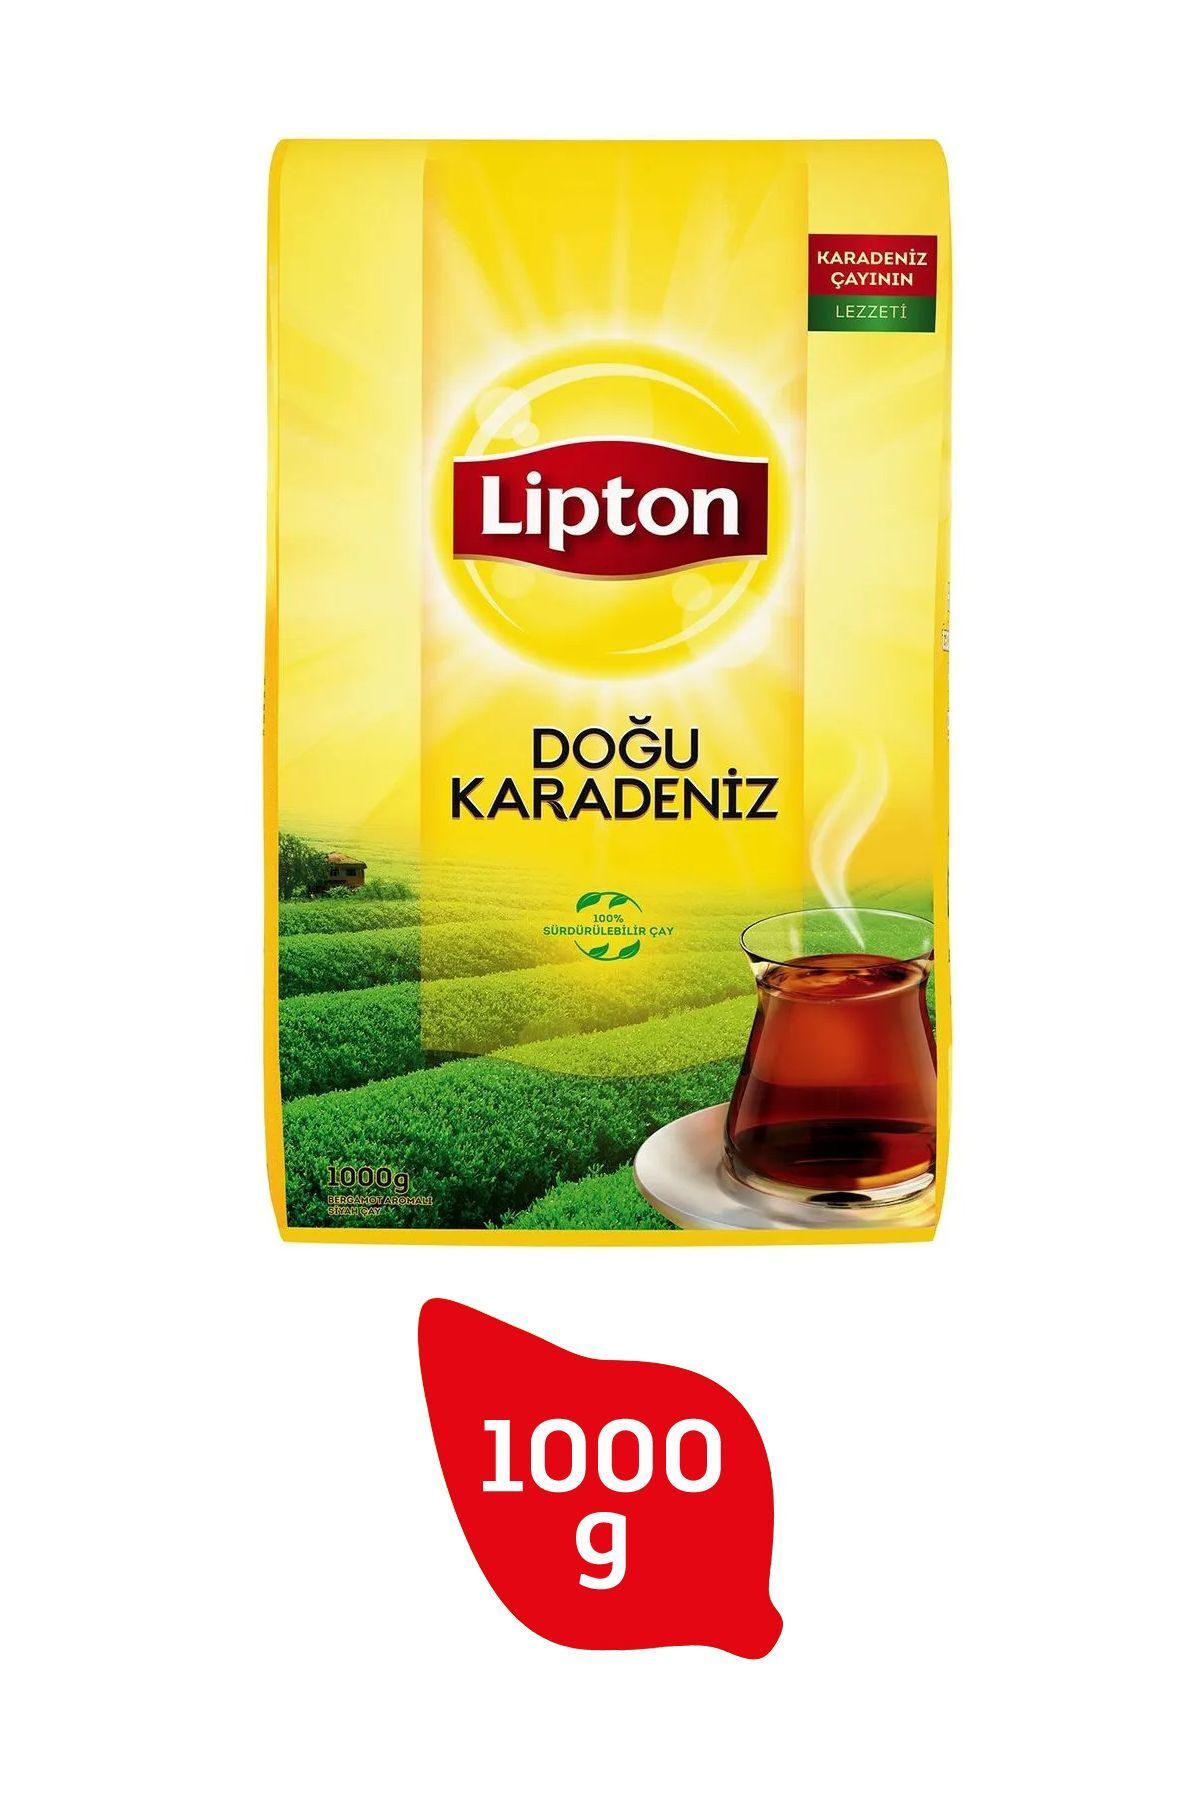 Lipton Doğu Karadeniz Dökme Çay 1000 gr.